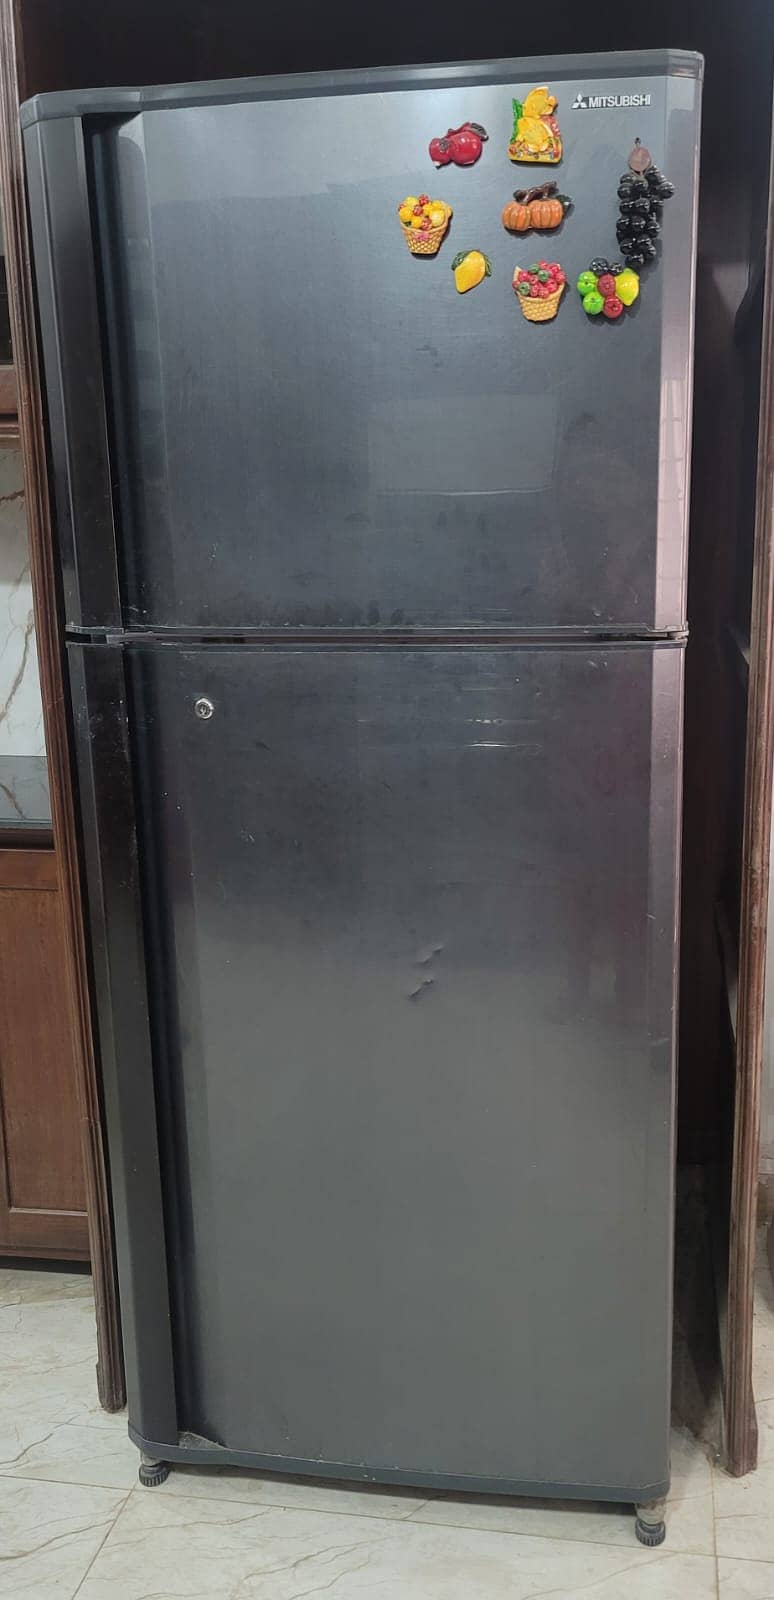 Mitsubishi Refrigerator 0